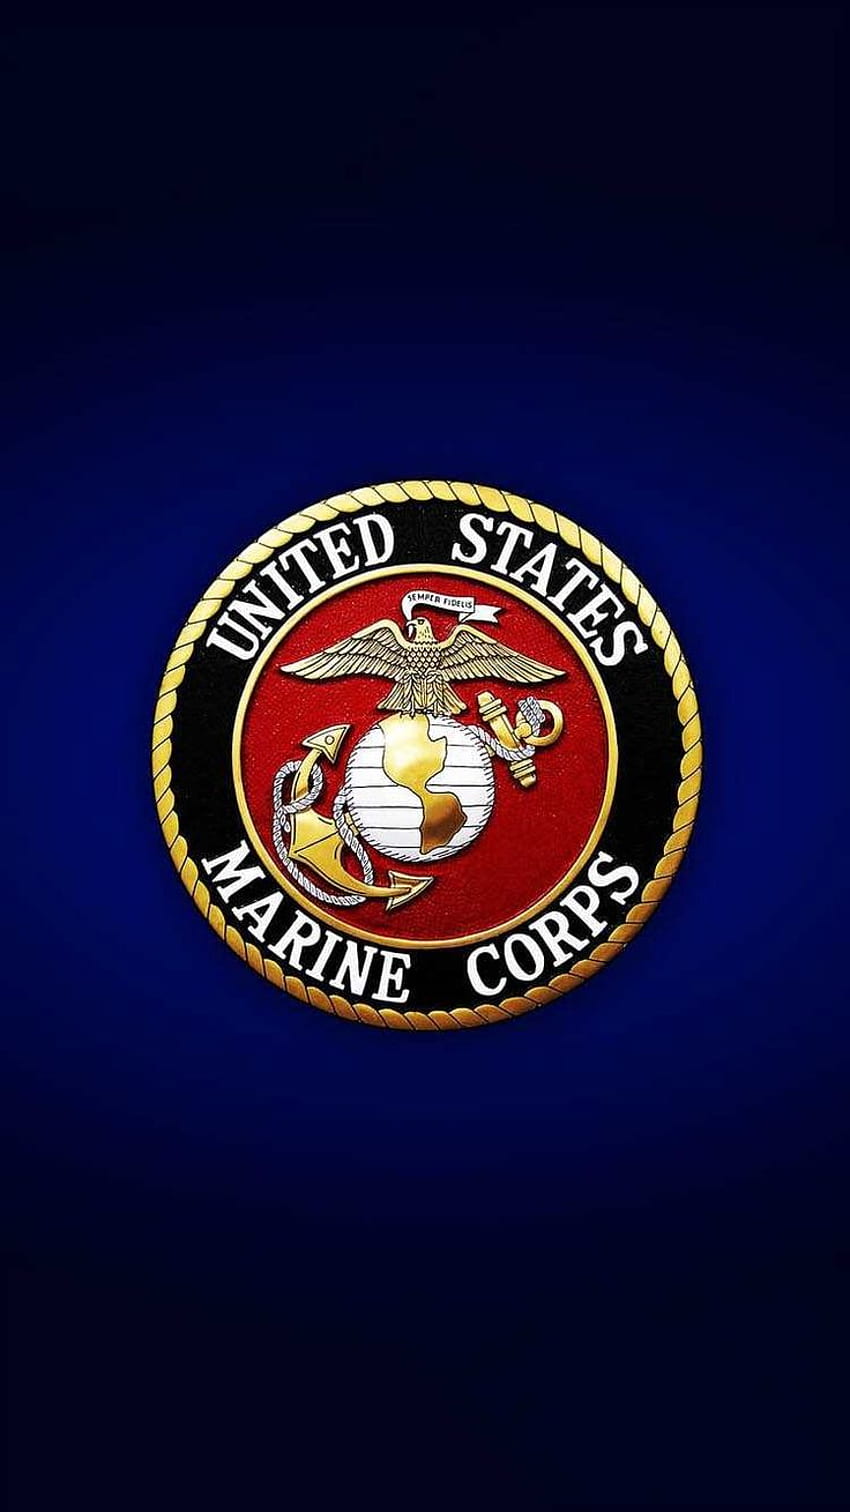 Marine Corps Descubra más Militares estadounidenses, Fuerzas Armadas, Marine Corps, United States Marine Corps, Estados Unidos. Cuerpo de Marines, Usmc, Marine, Marine Logo fondo de pantalla del teléfono